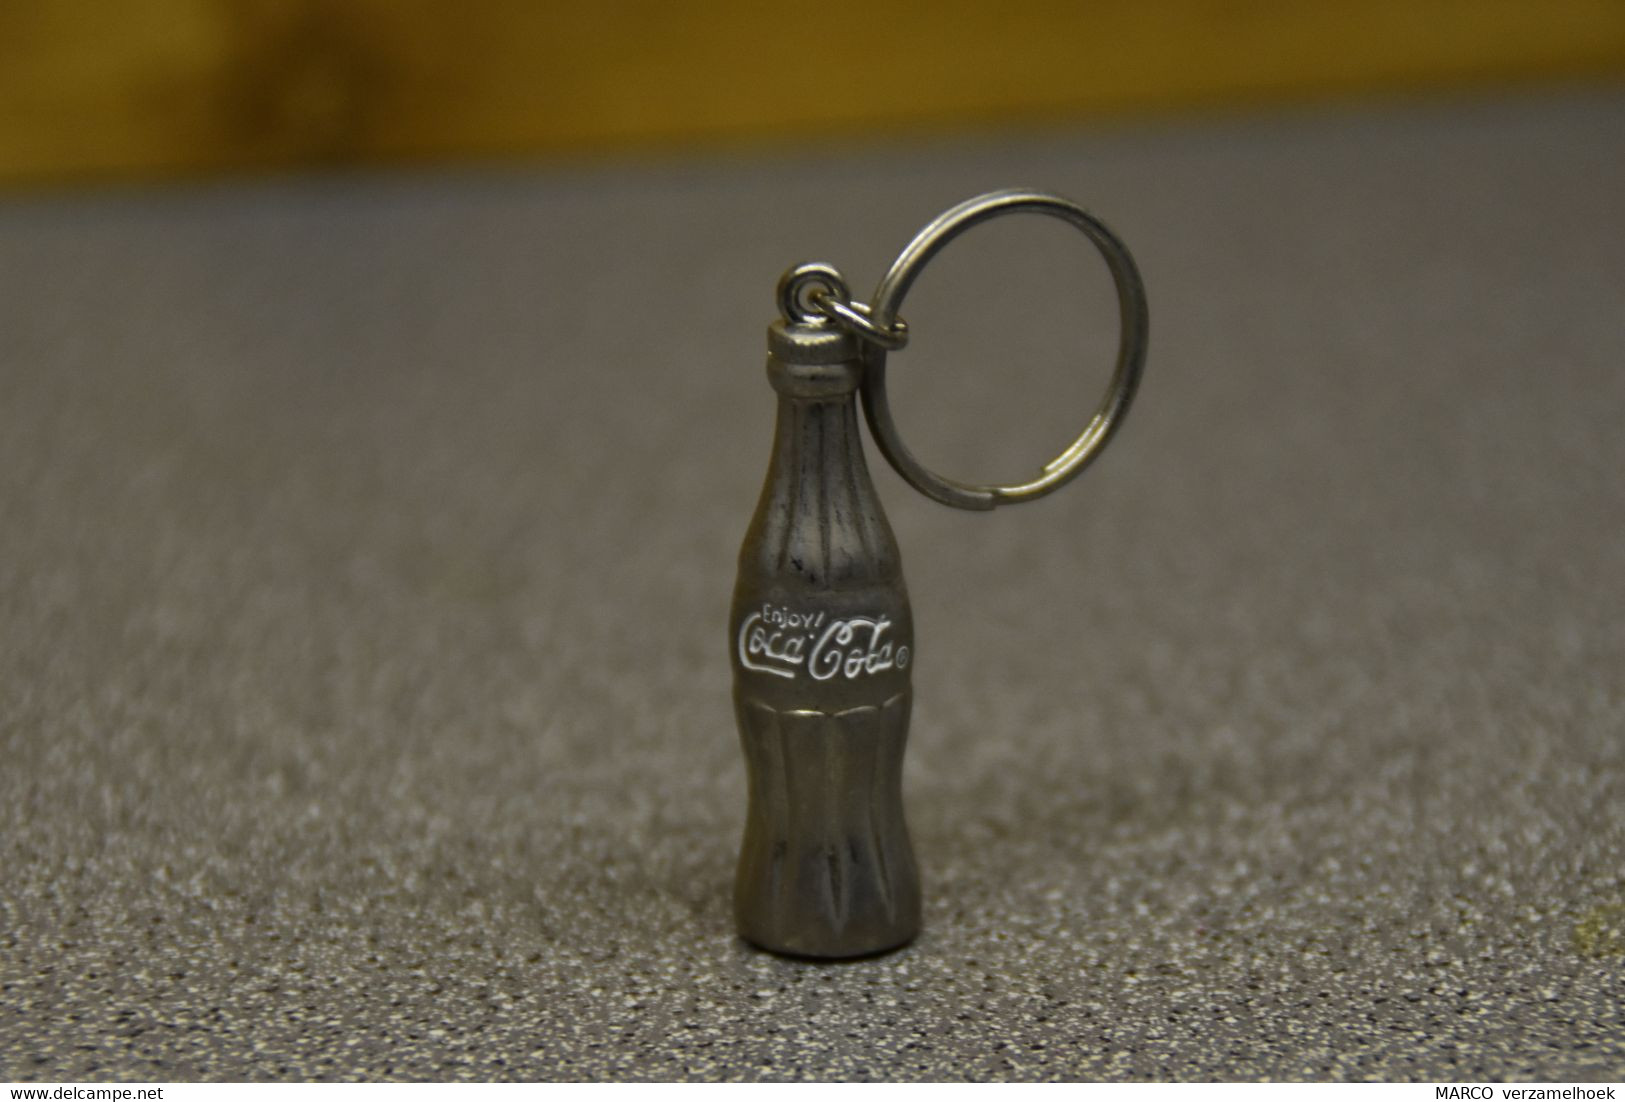 Coca-cola Company Porte Clé-sleutelhanger-key Chain - Sleutelhangers